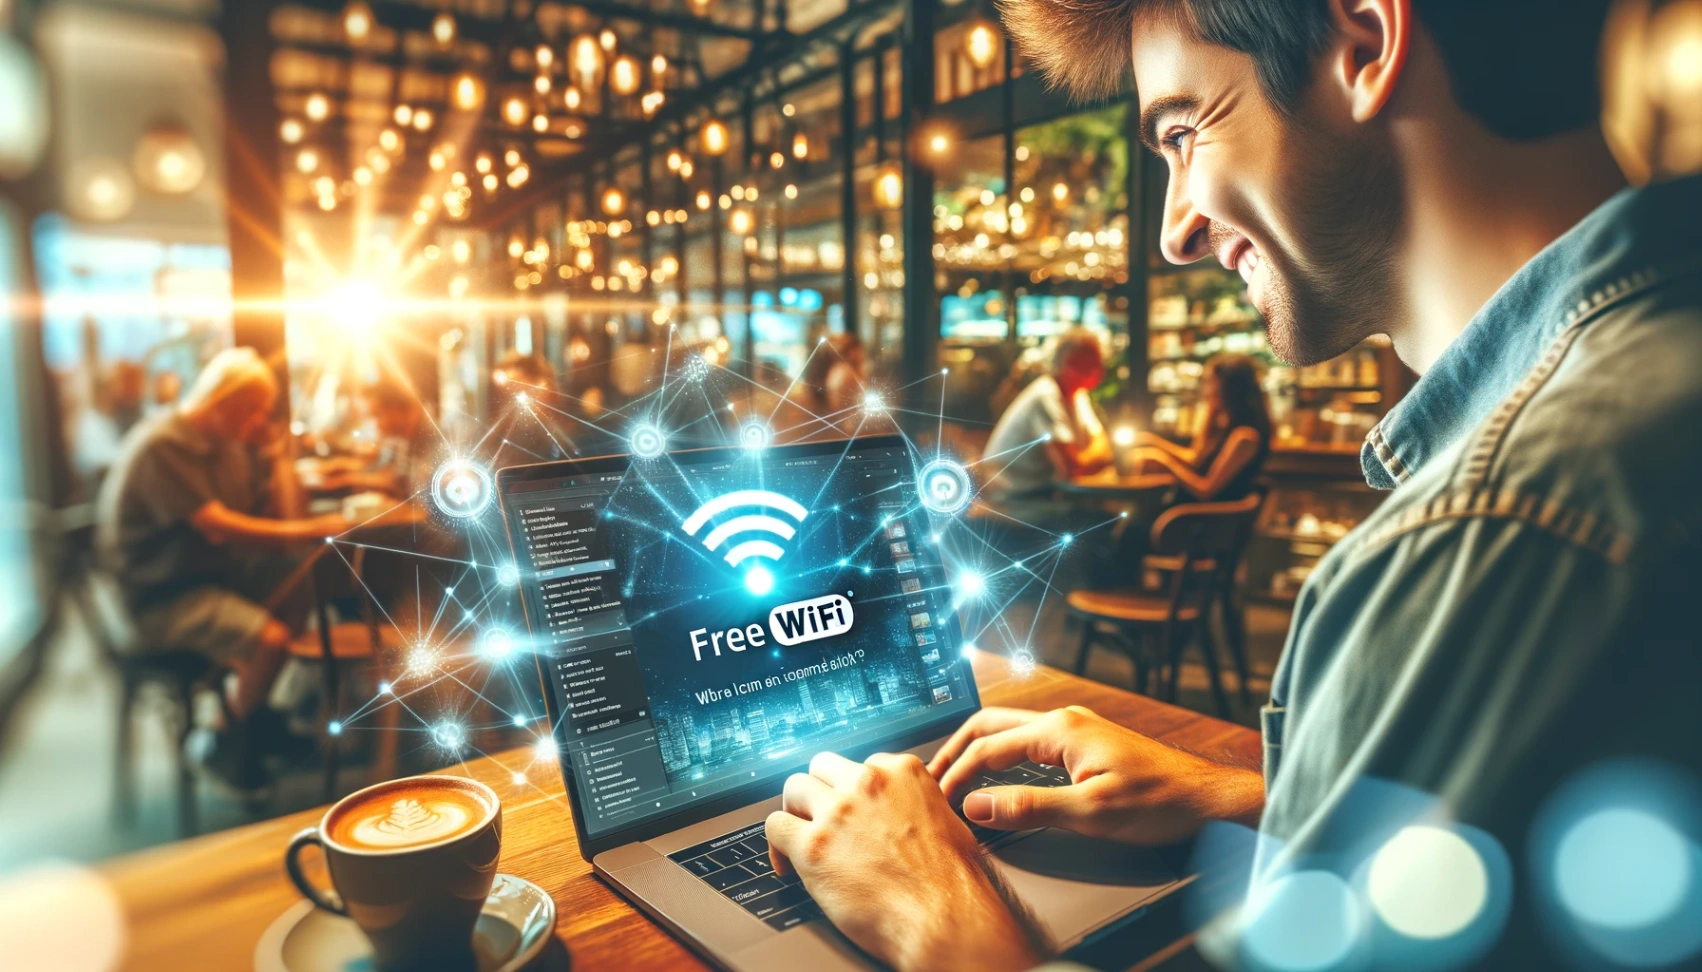 Lær trinn-for-trinn hvordan du finner gratis wifi helt gratis